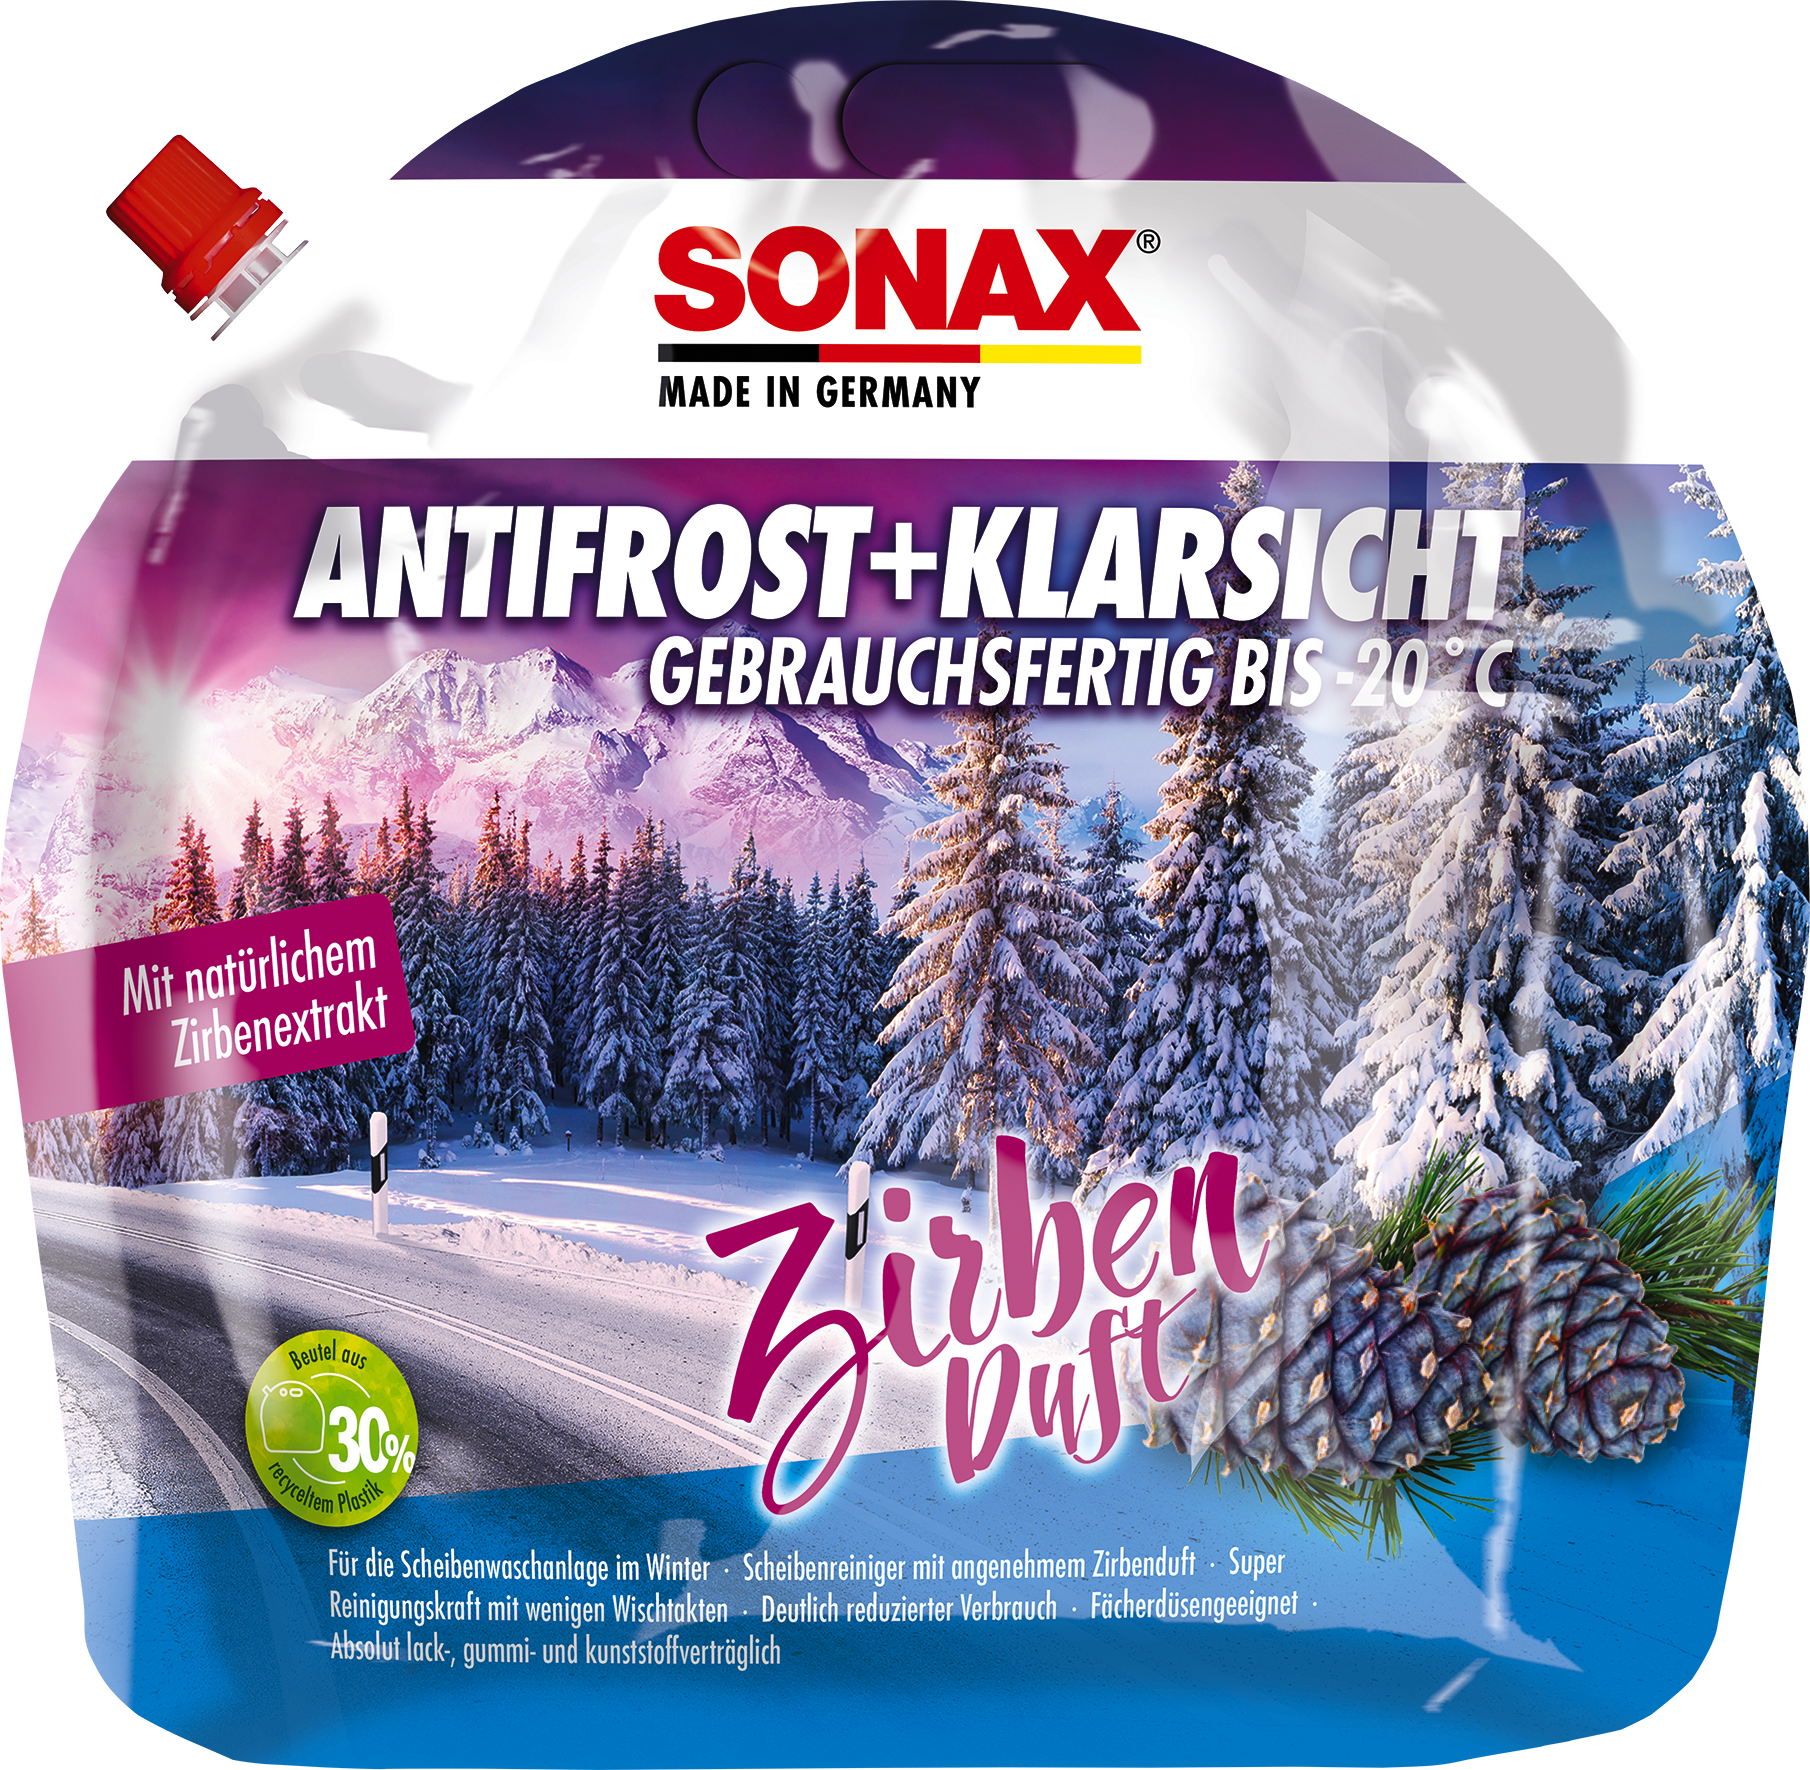 2 X SONAX XTREME AntiFrost+KlarSicht Ice Fresh 01335410 5 Liter, Winter, Pflegemittel